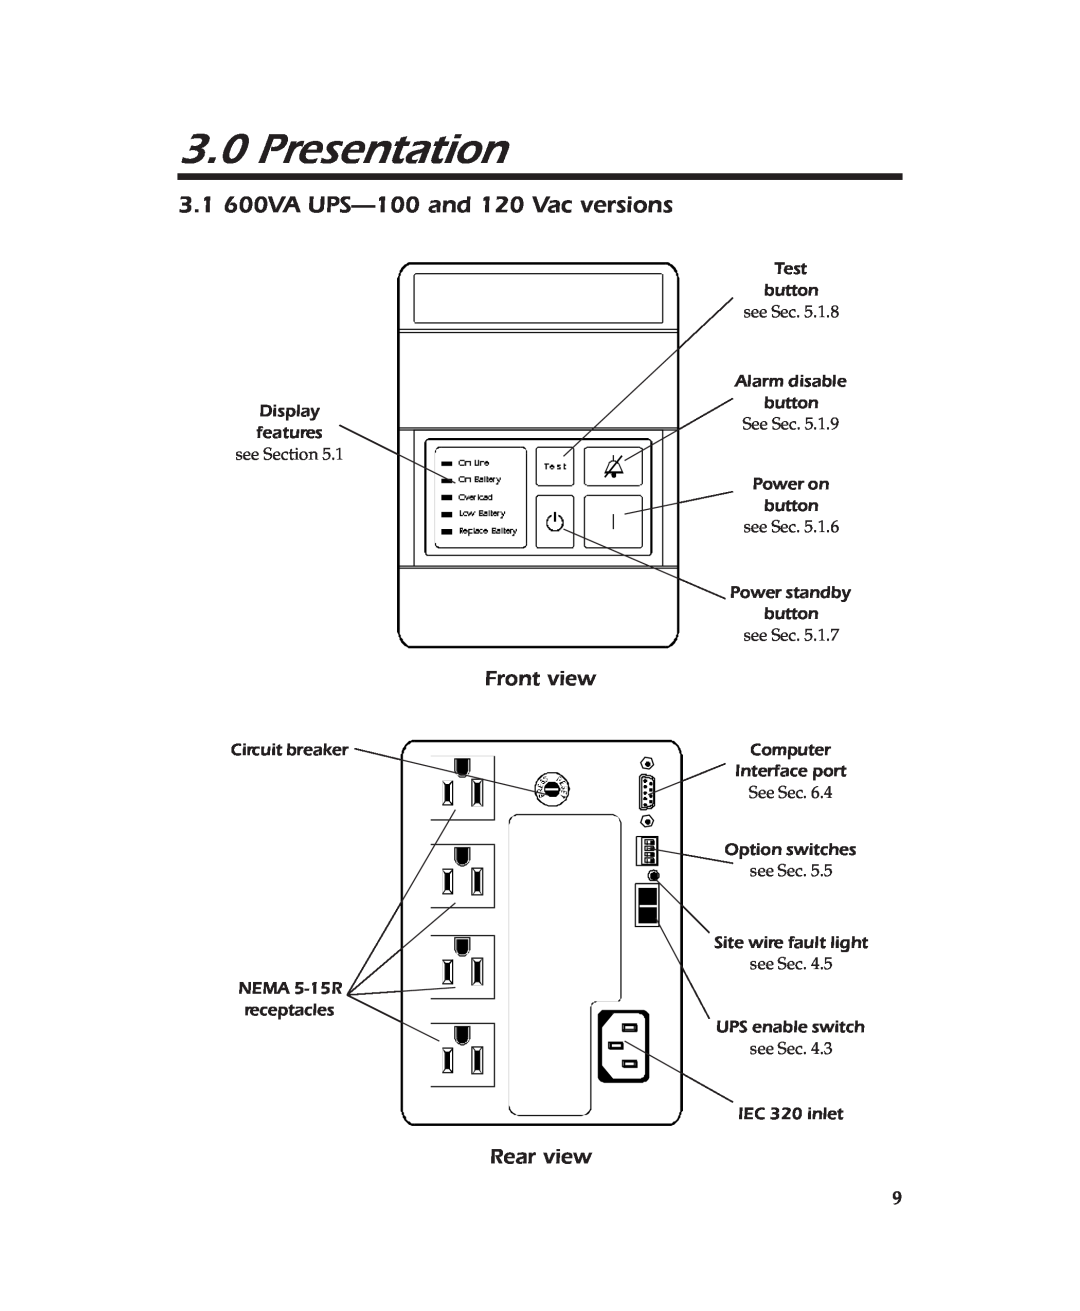 APC user manual Presentation, 3.1 600VA UPS-100and 120 Vac versions 